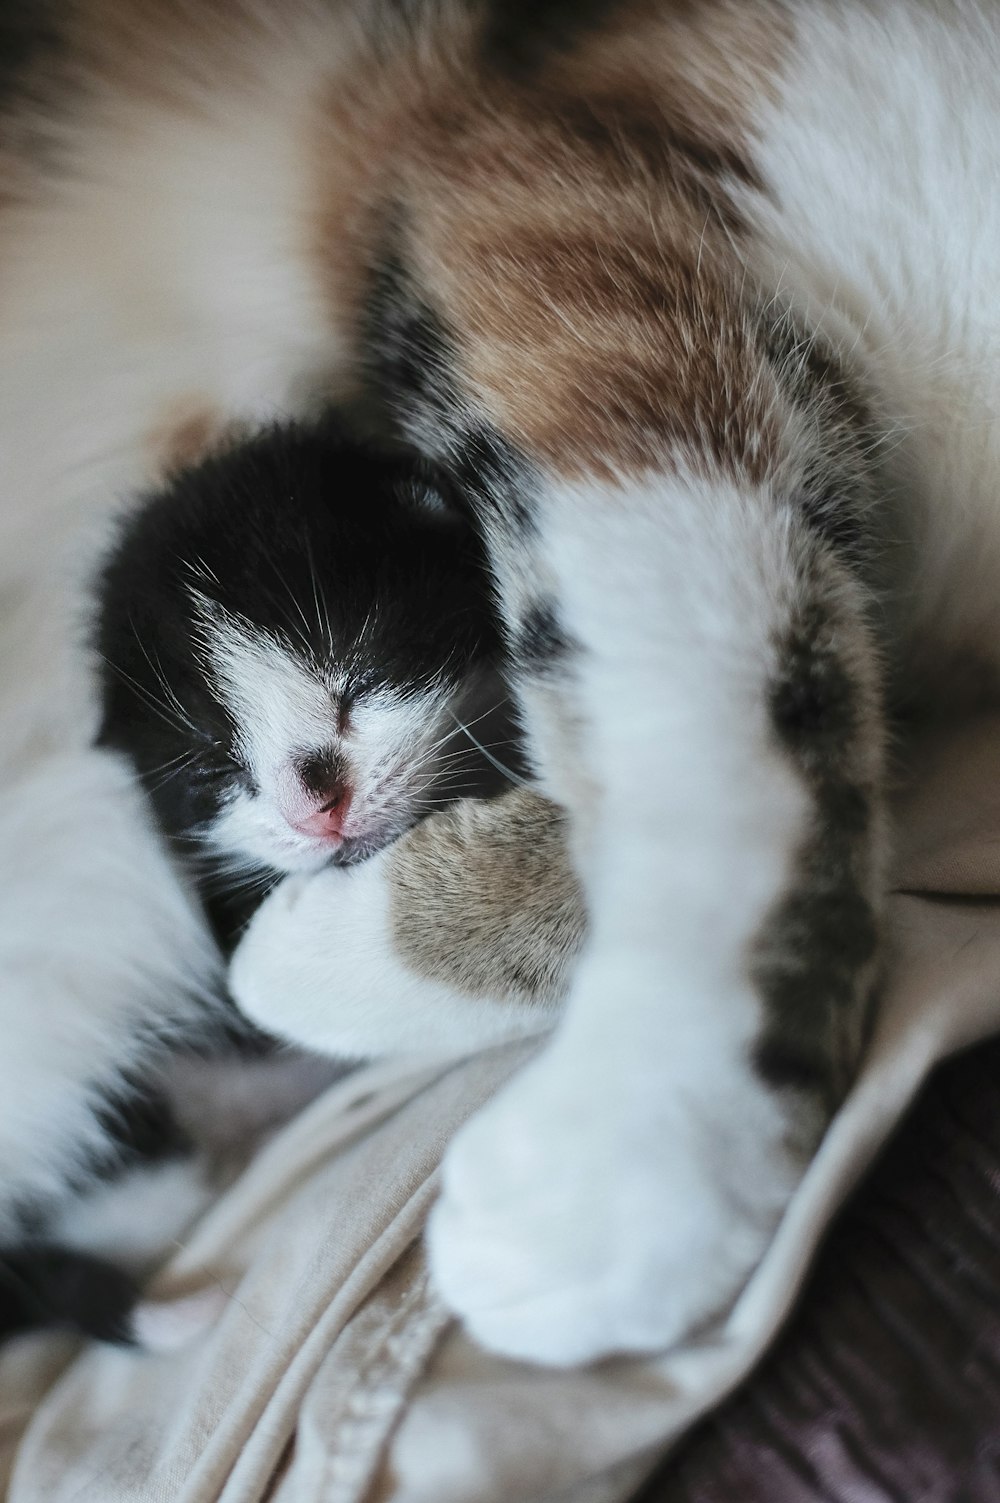 kitten sleeping with cat